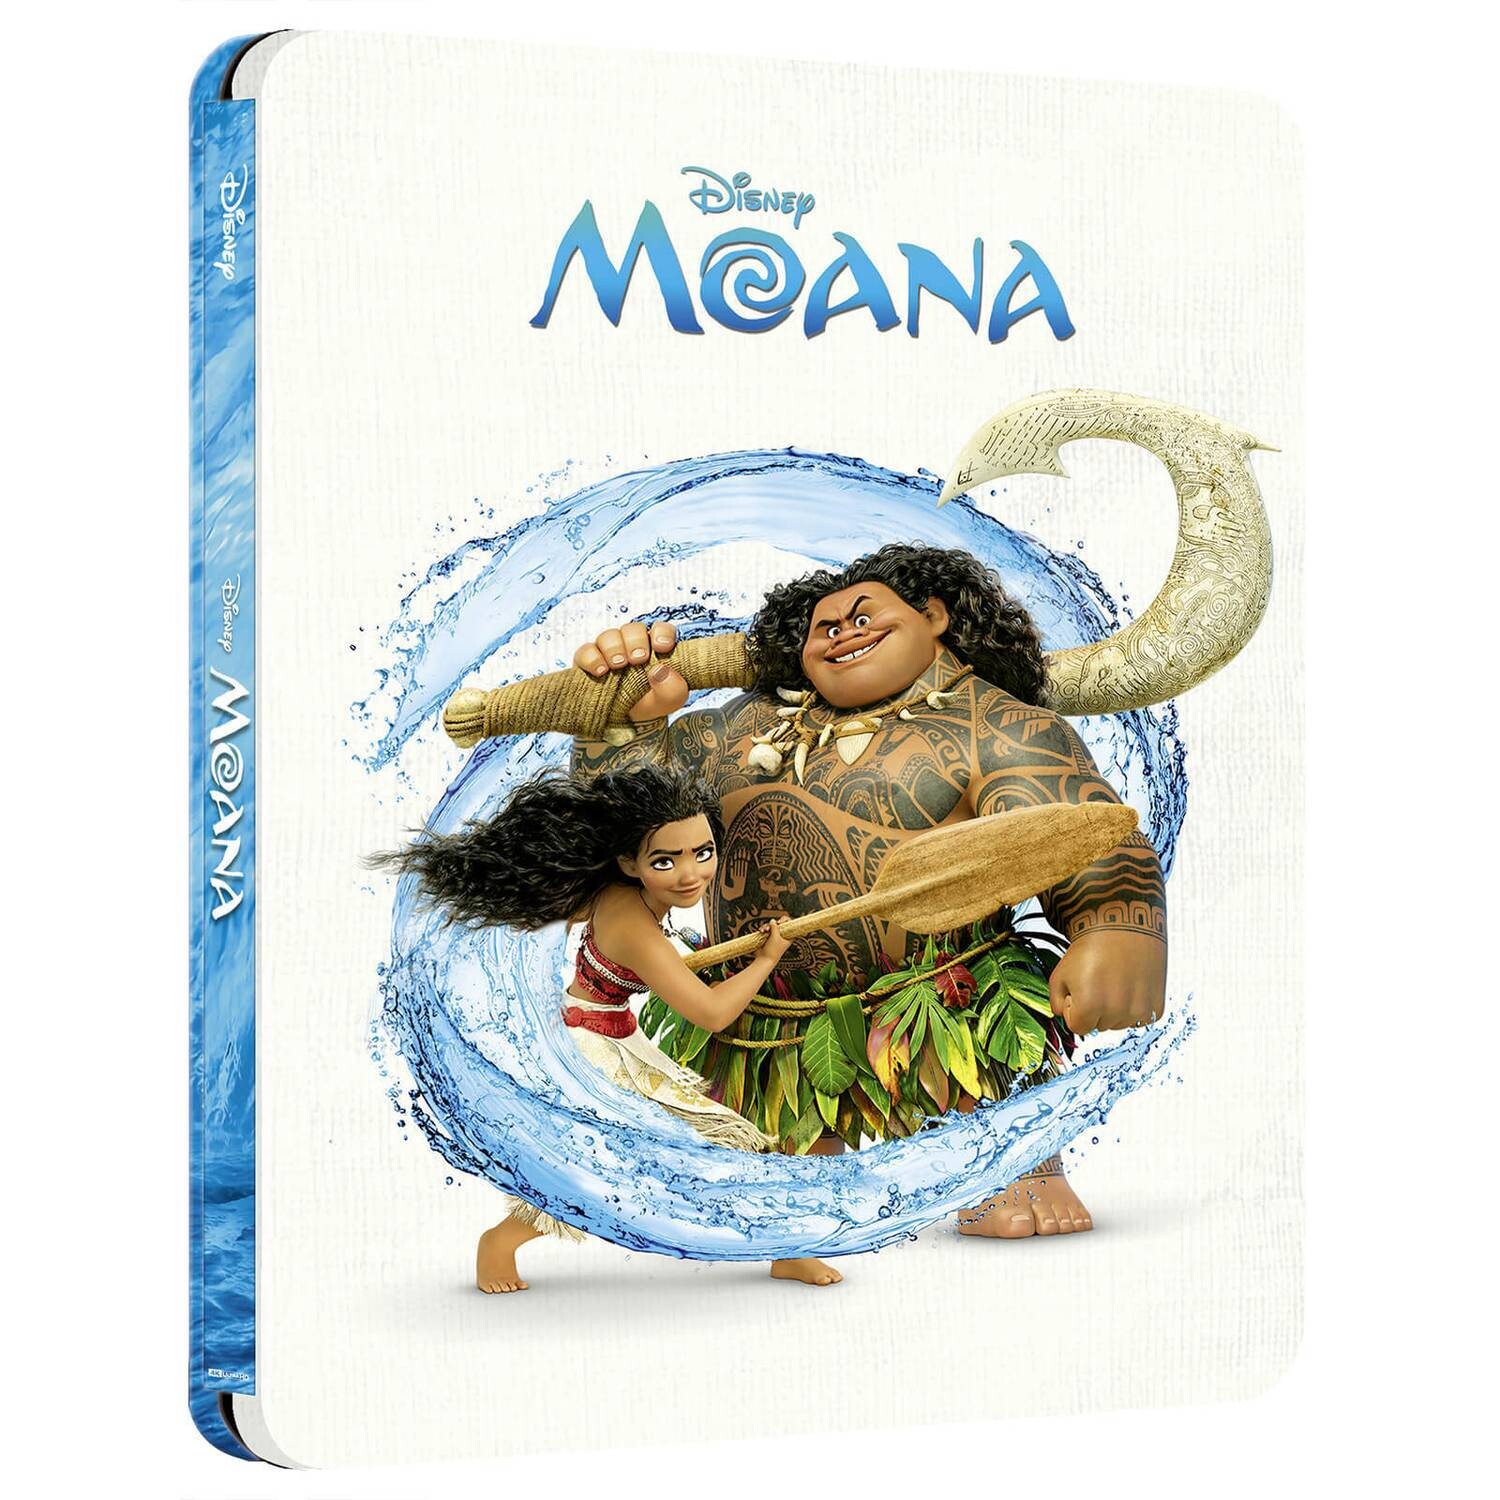 Disney's Moana (2016) 4K Ultra HD + Blu-ray Steelbook [Region Free]